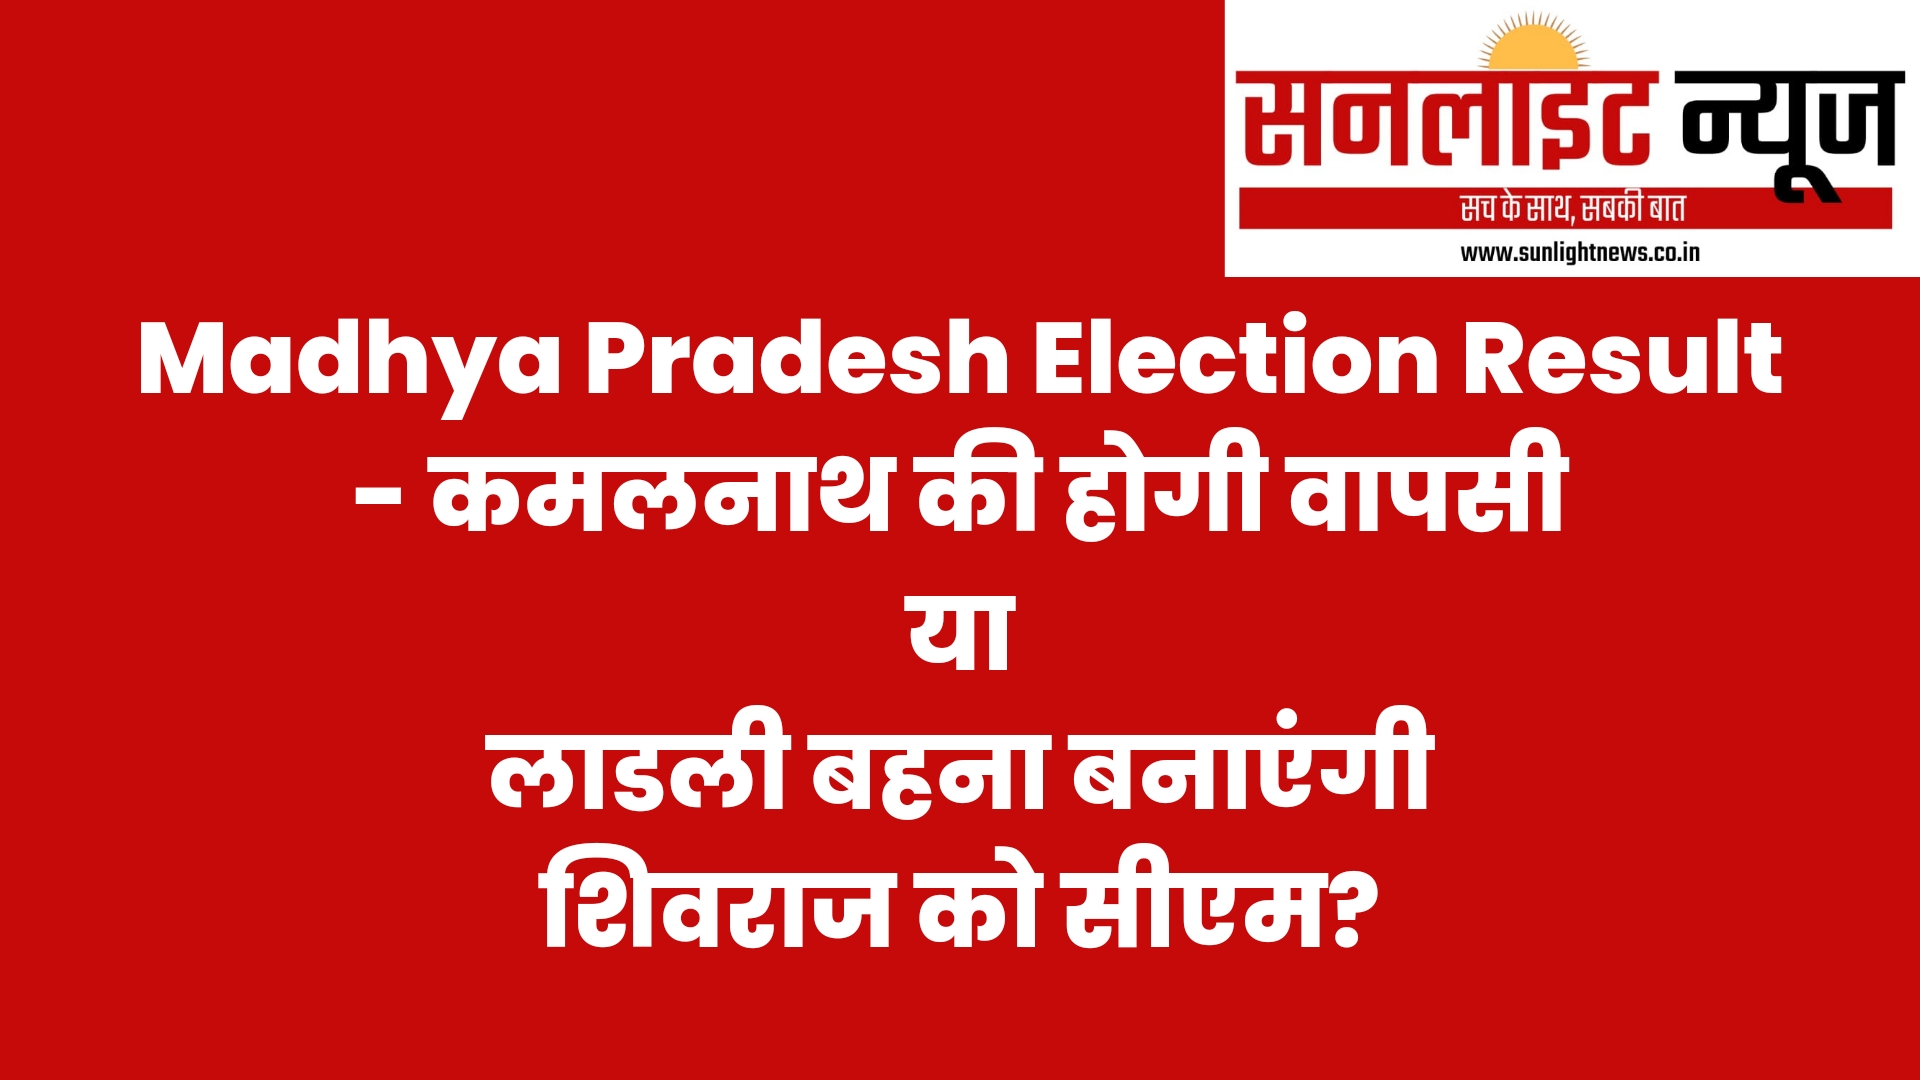 Madhya Pradesh election result